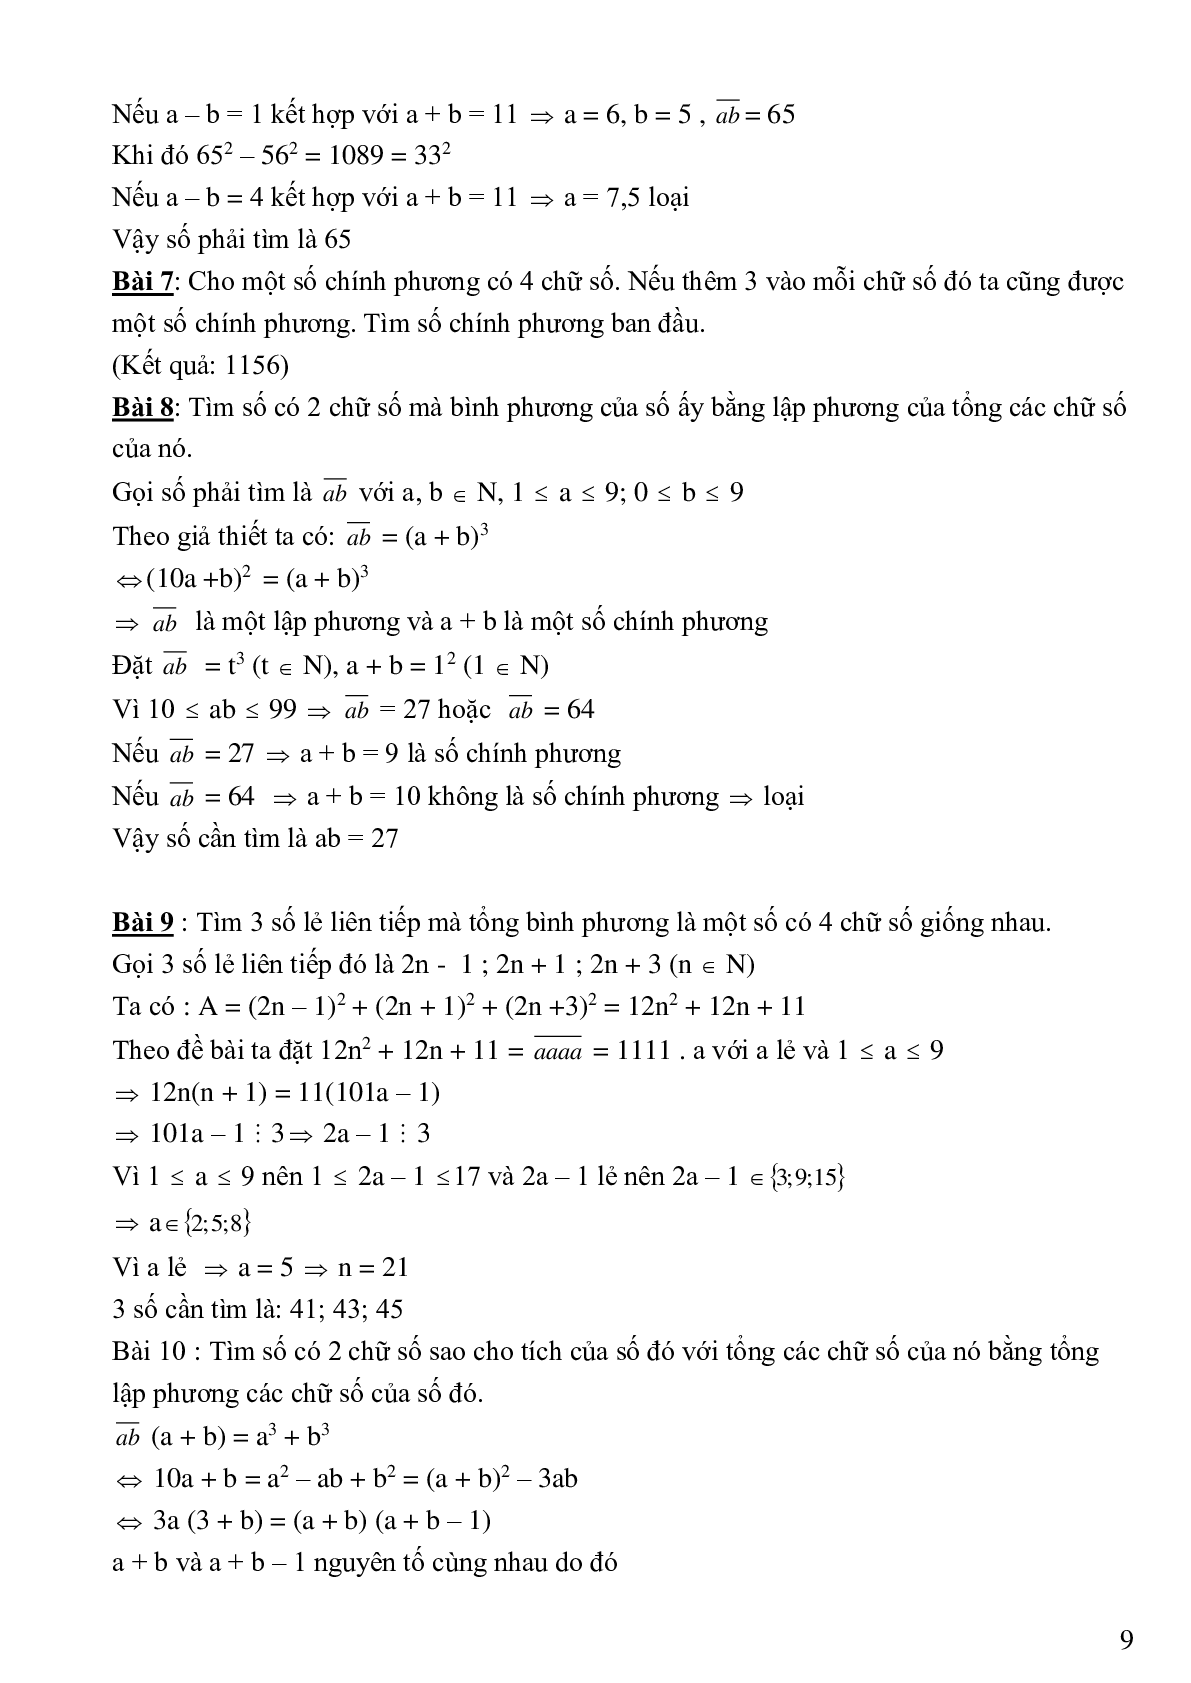 Bài tập cơ bản và nâng cao số chính phương (trang 9)